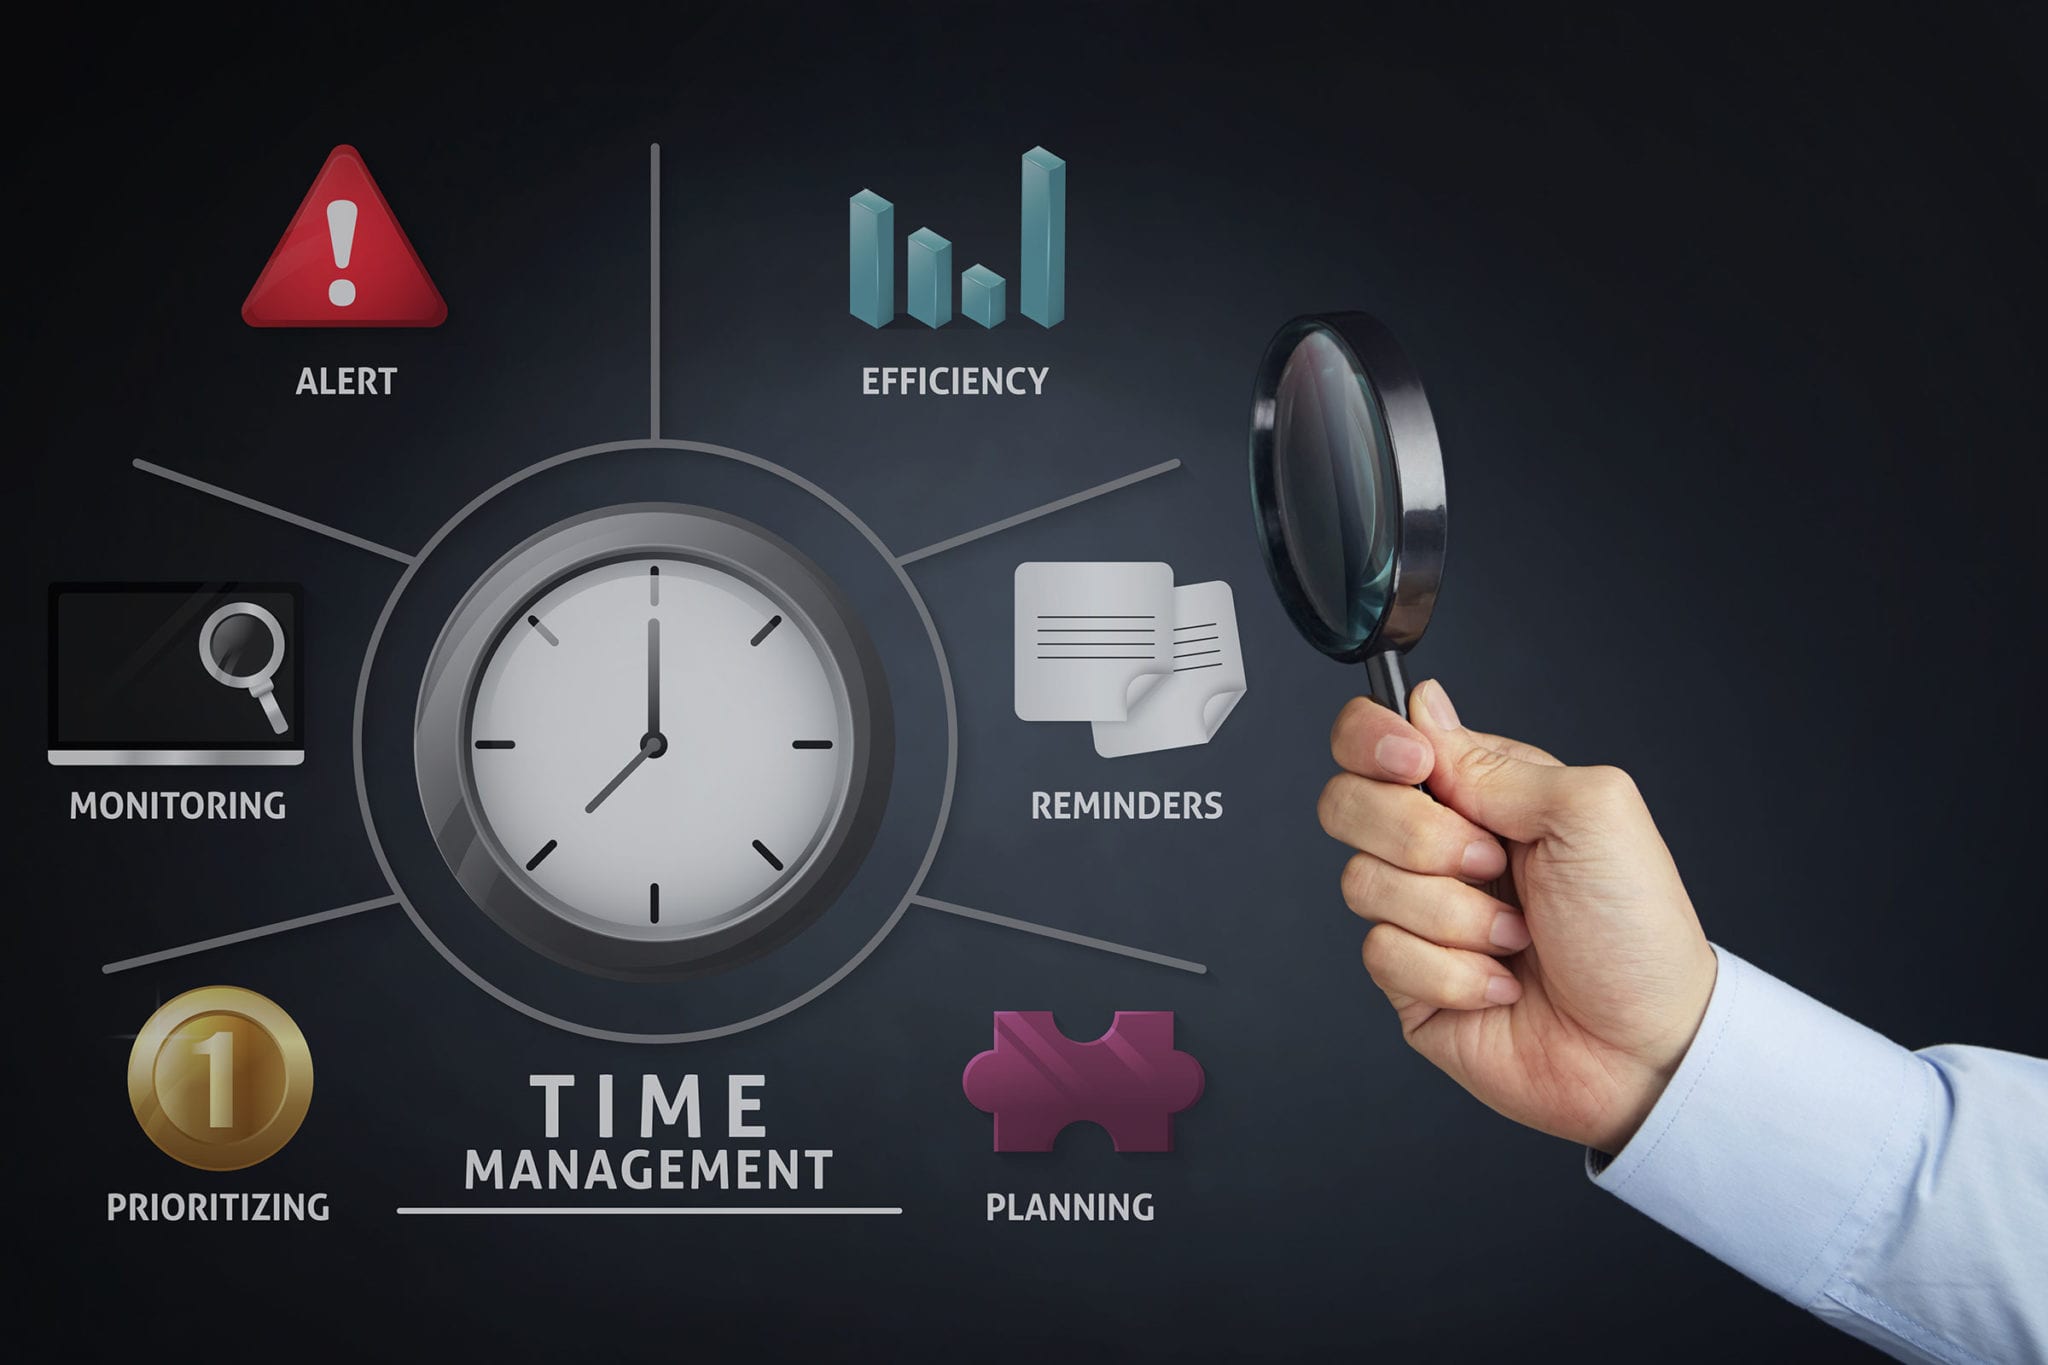 time management websites